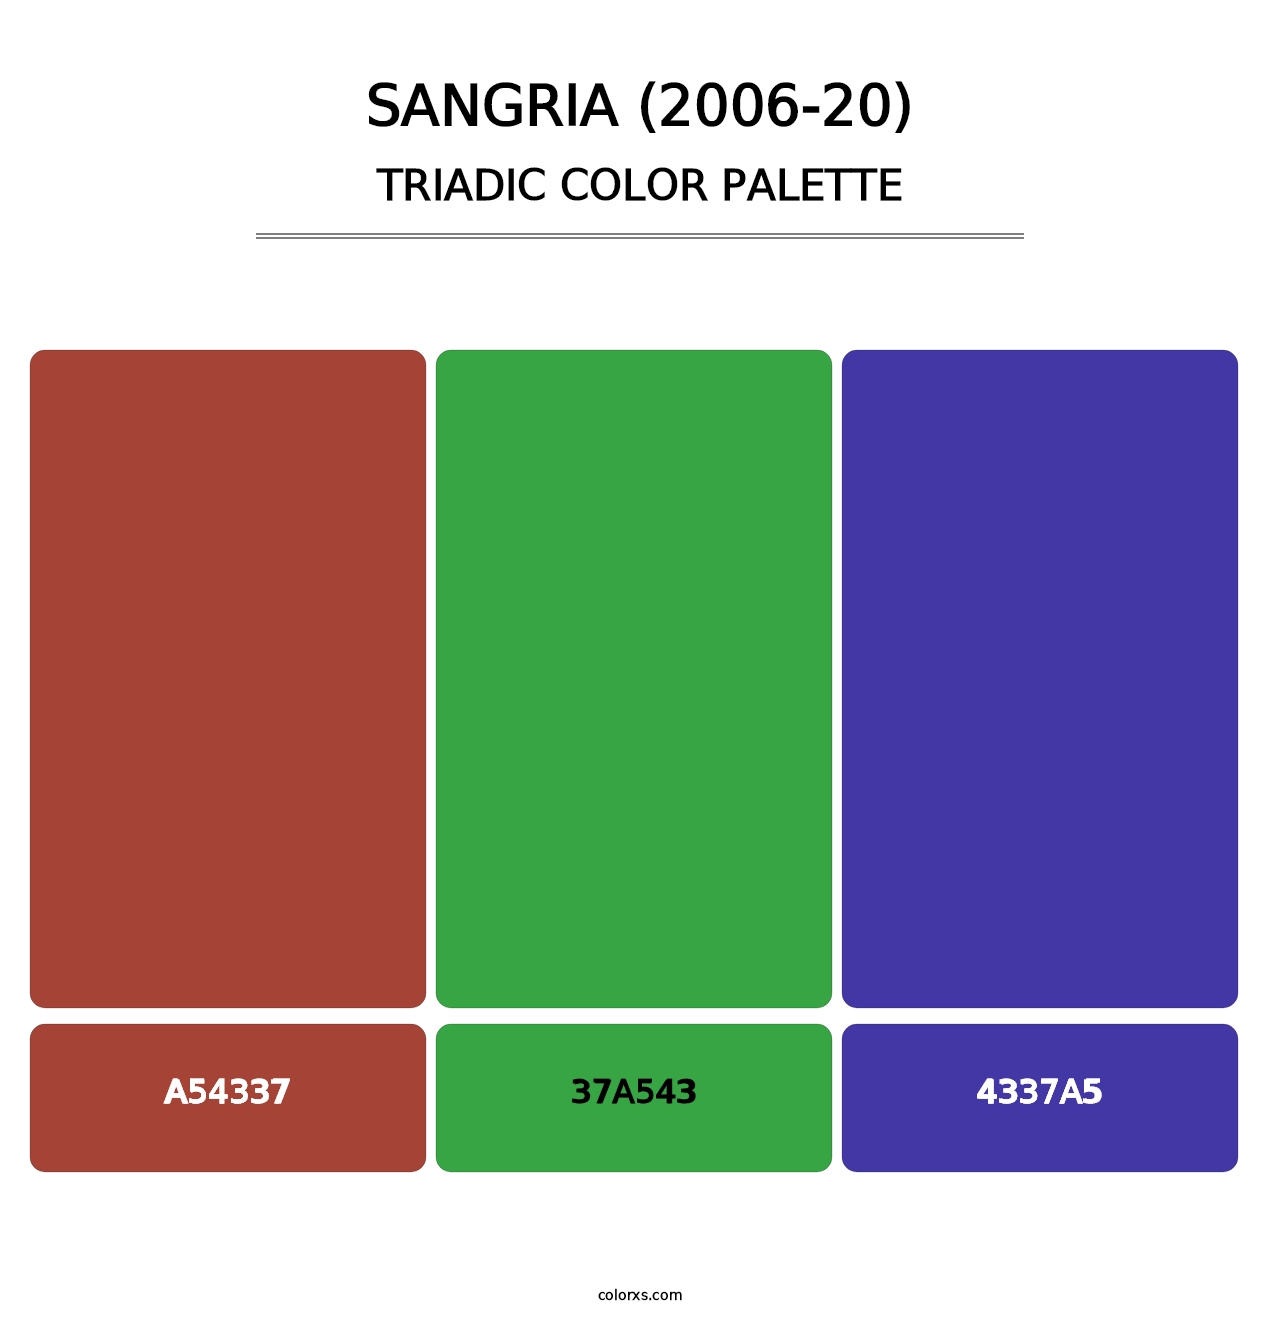 Sangria (2006-20) - Triadic Color Palette